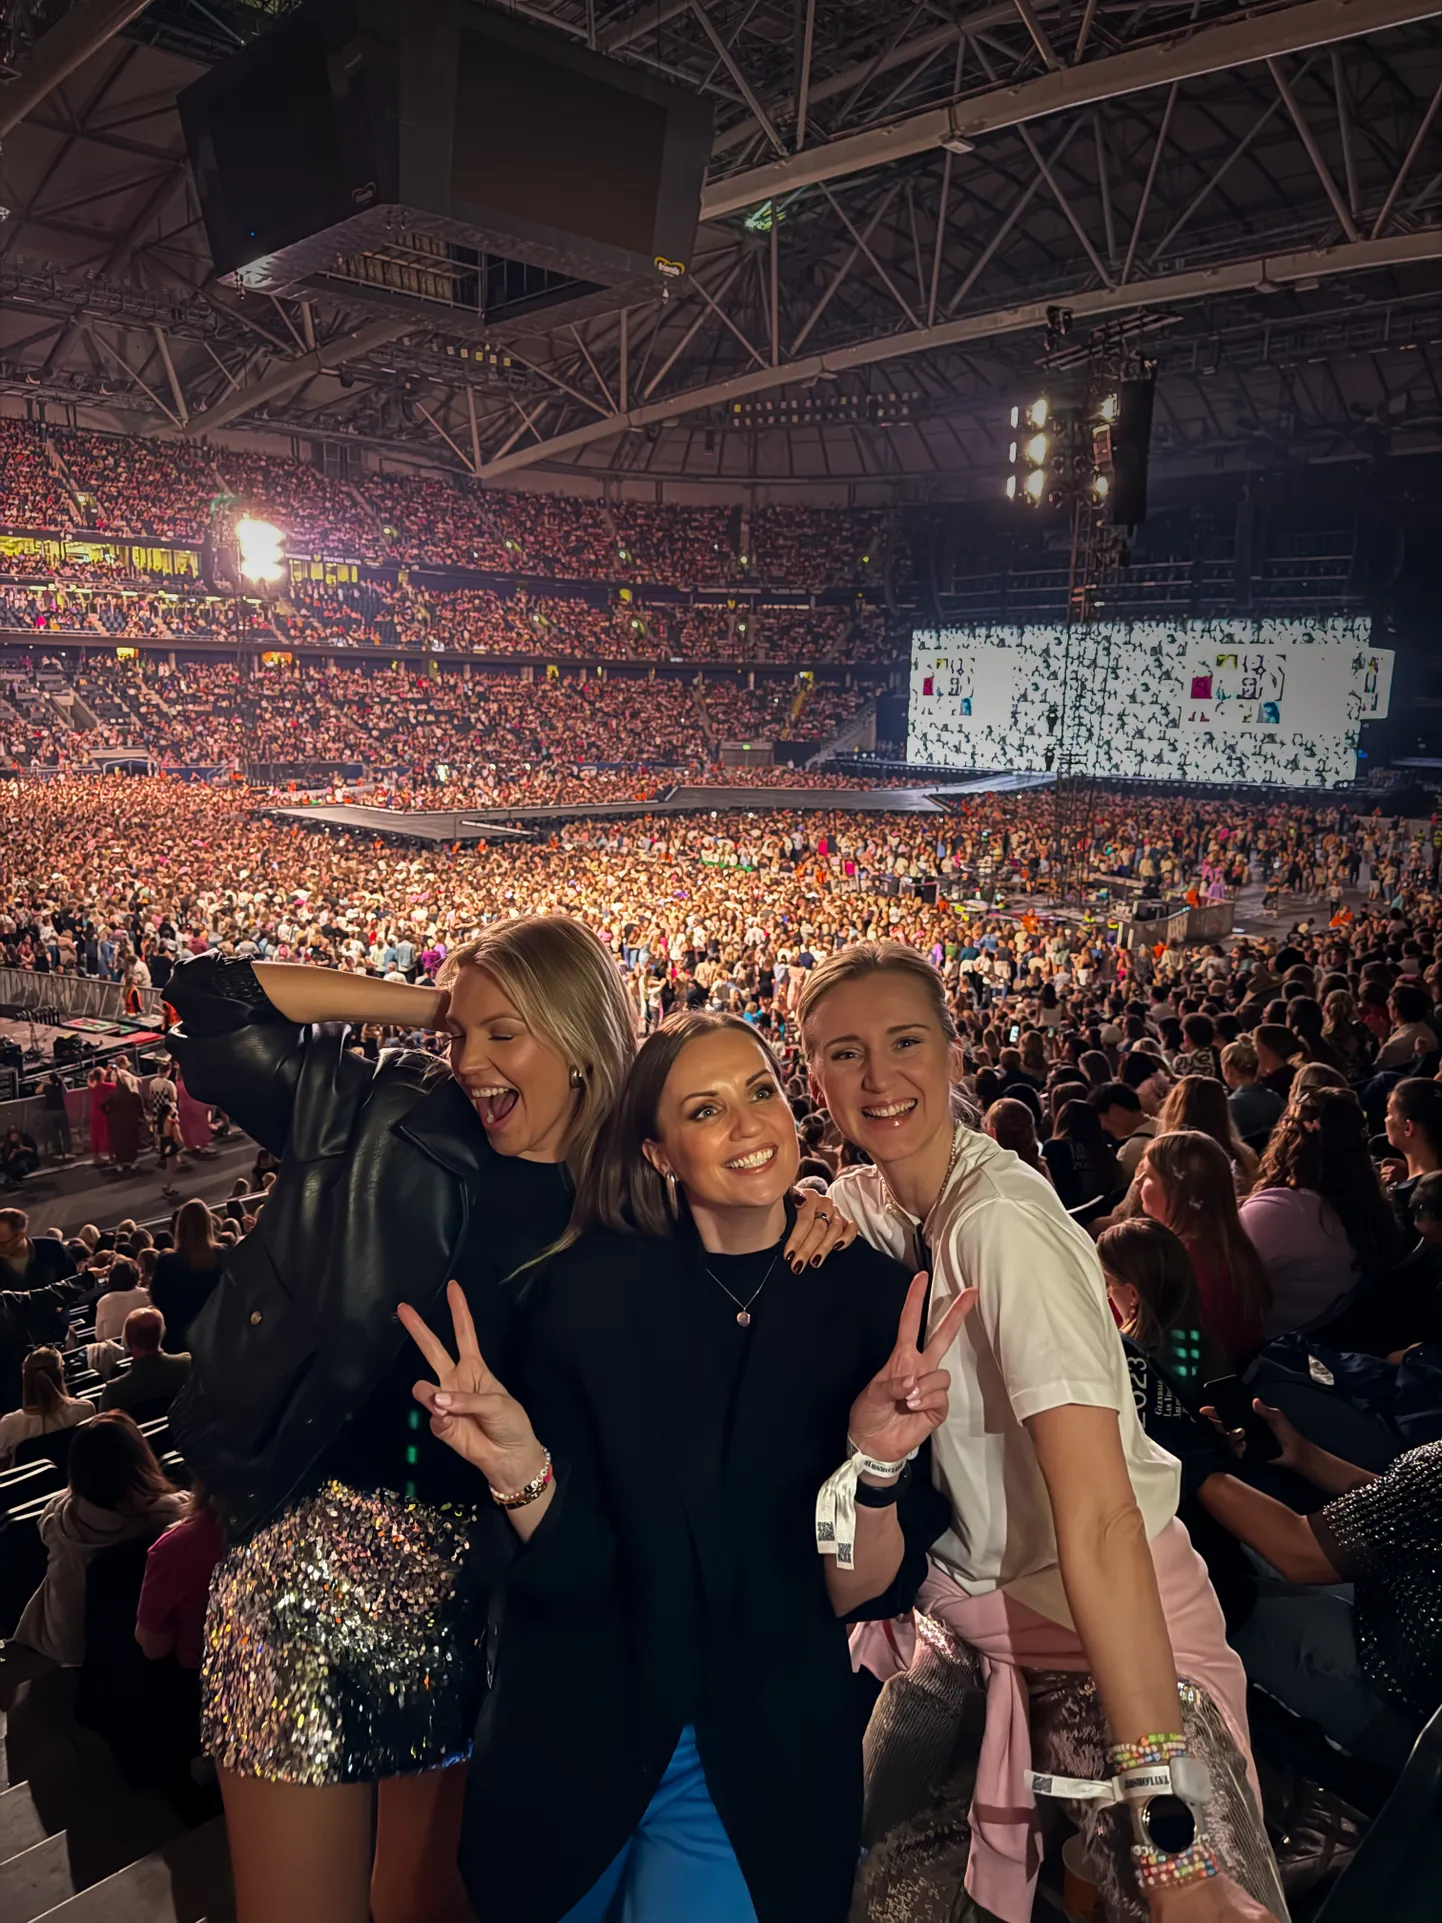 Armastatud telesaatejuht Keili Sükijainen käis möödunud nädalavahetusel Stockholmis toimunud Taylor Swifti kontserdil.